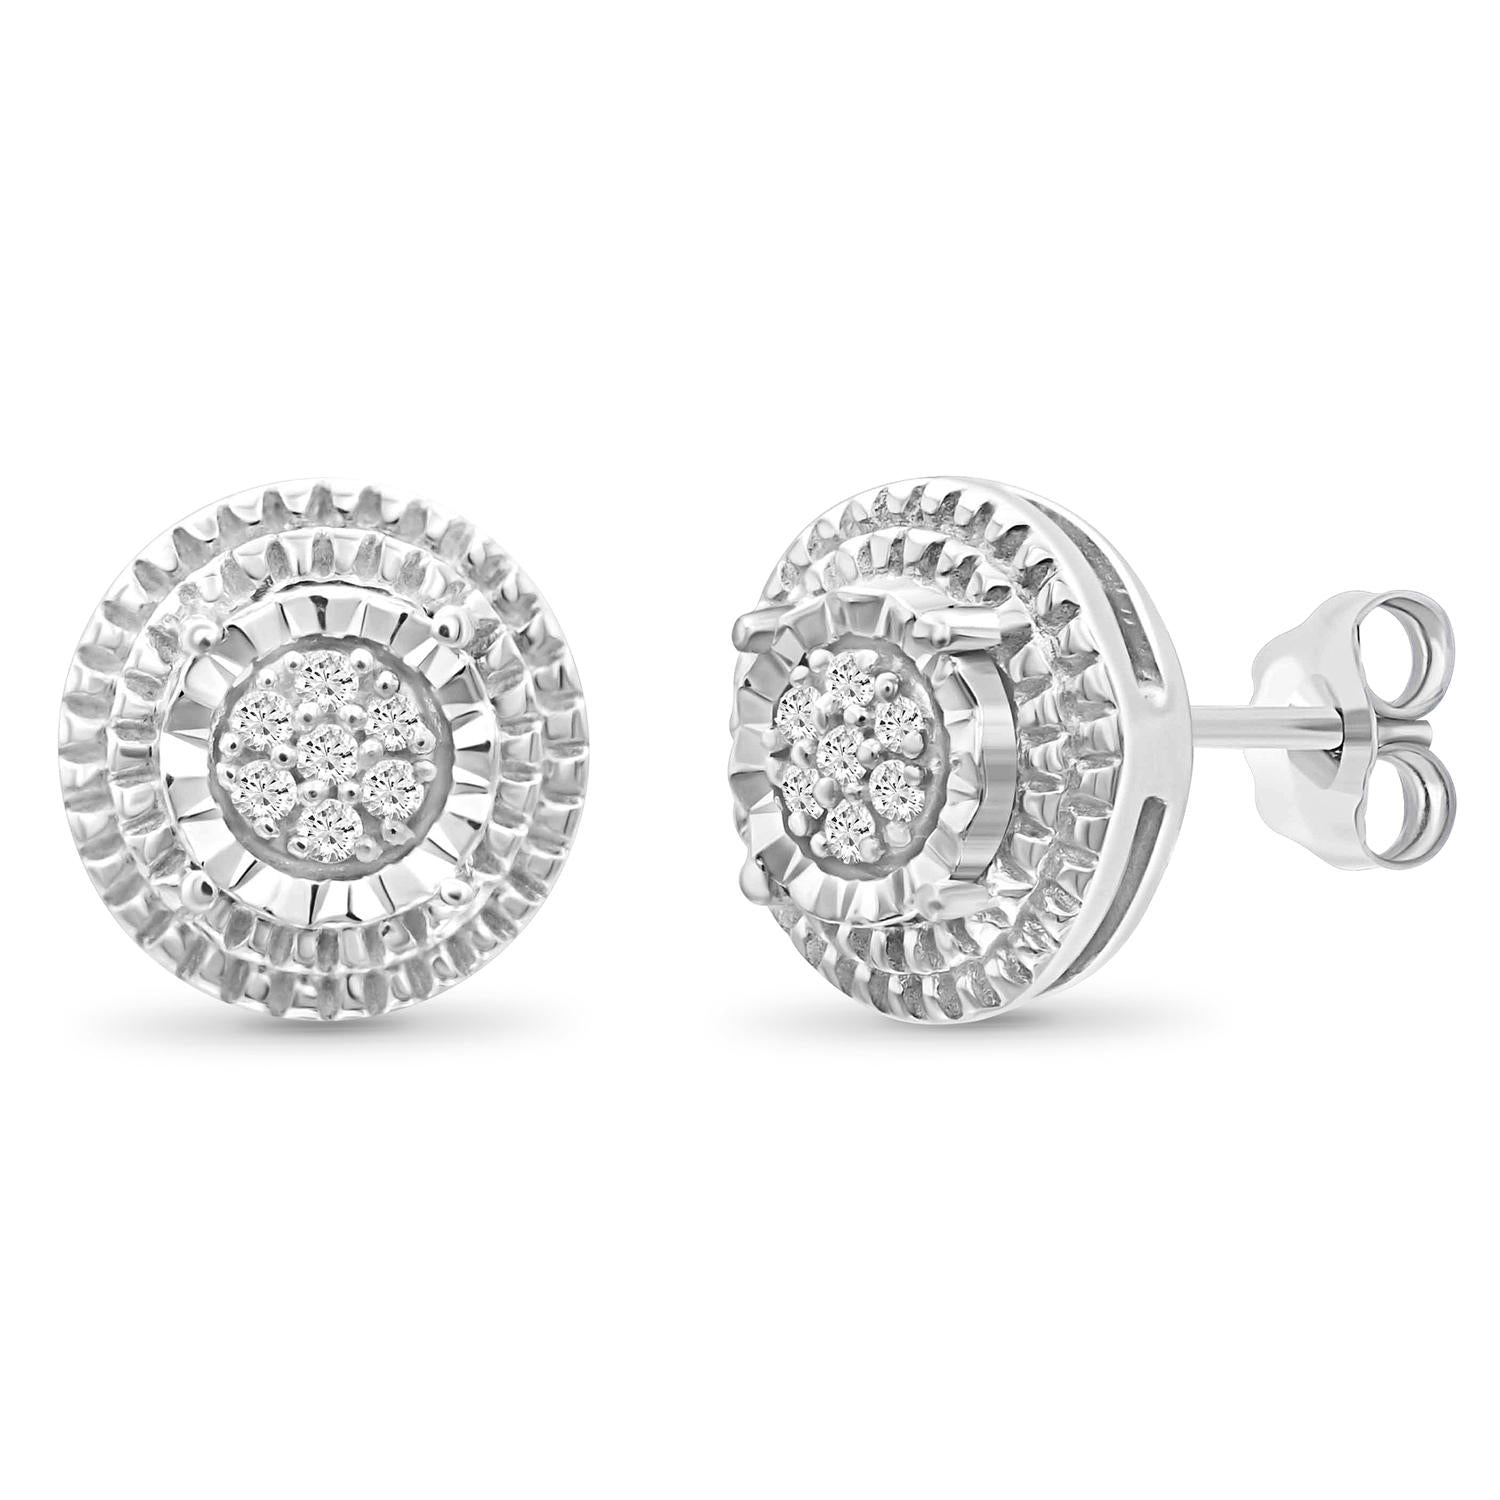 1/20 Carat White Diamond Earrings in Sterling Silver